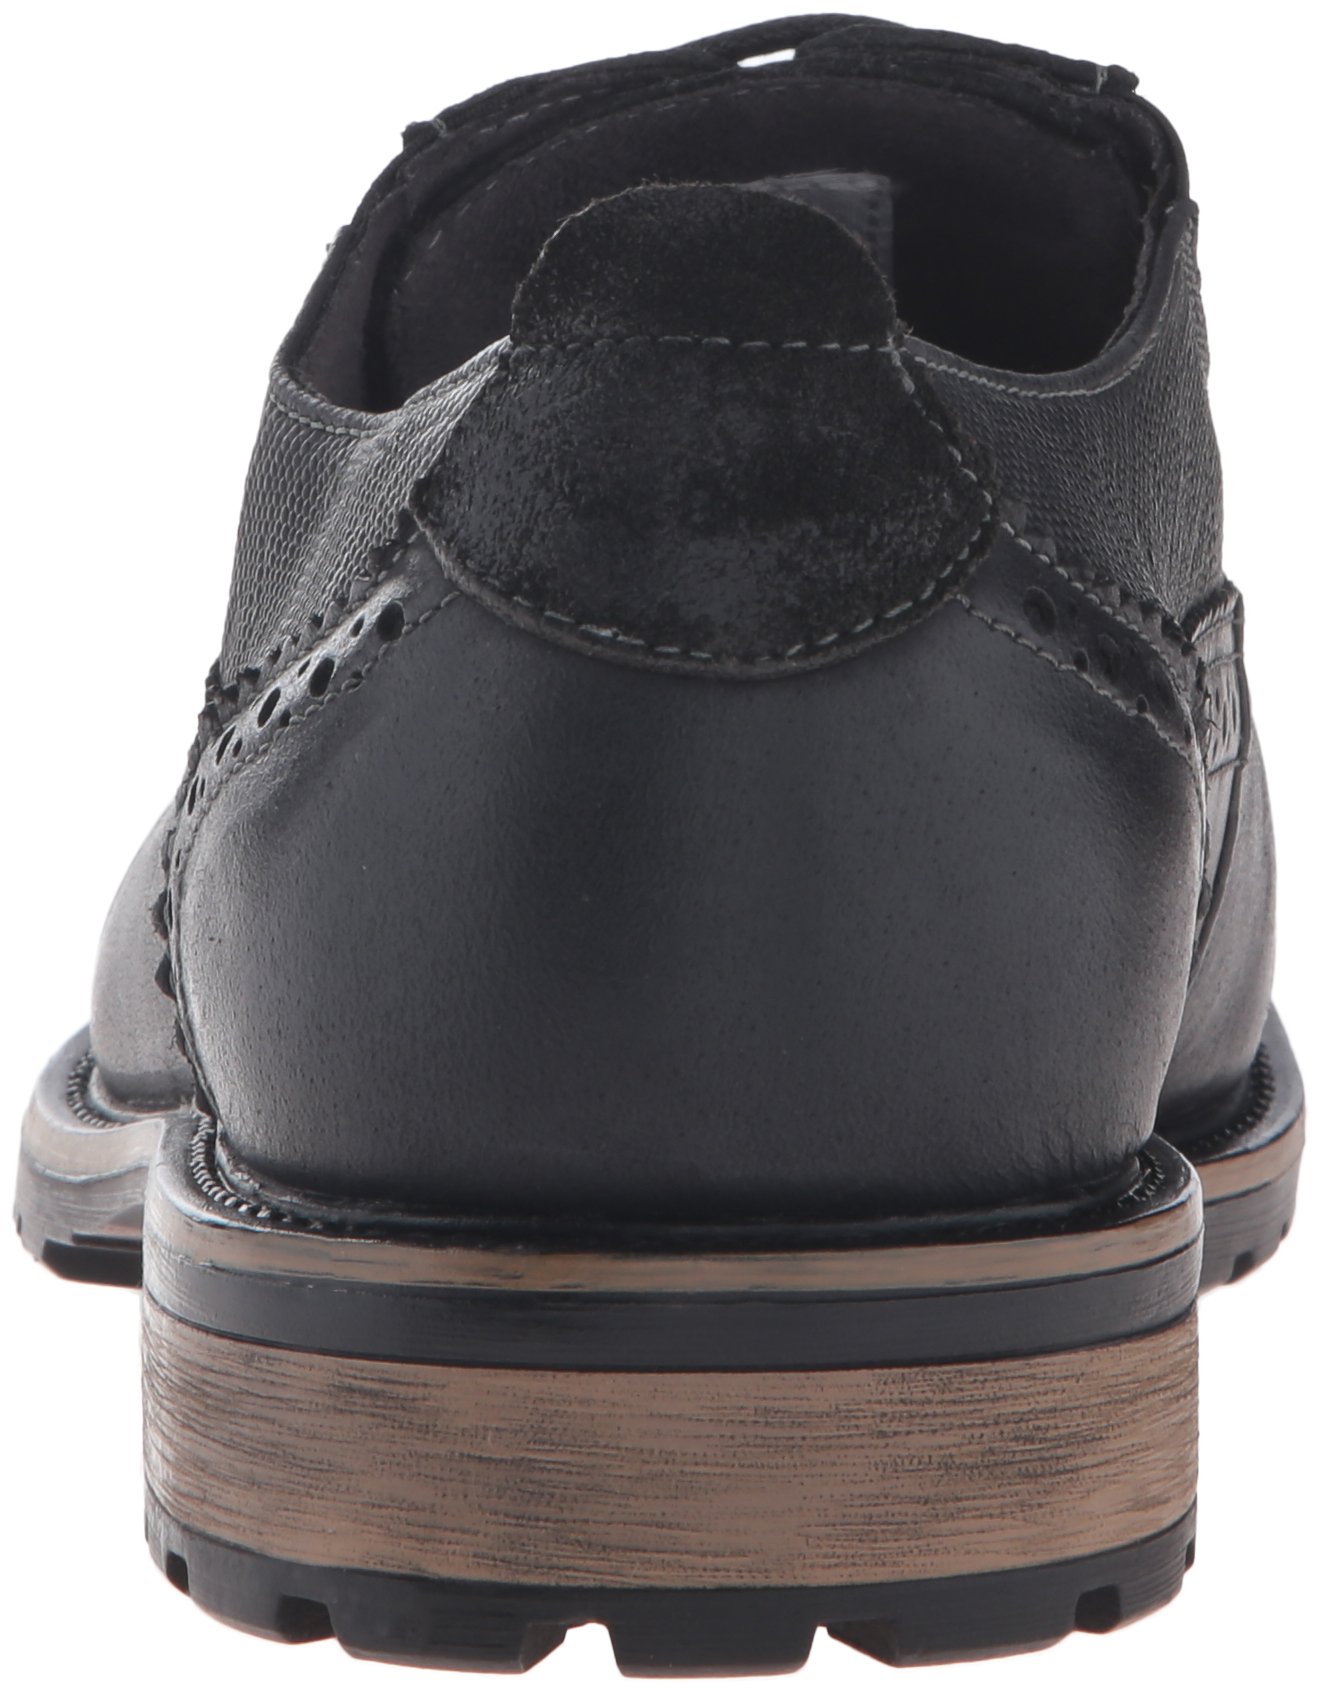 Steve Madden Men's Spanner Oxford Shoe